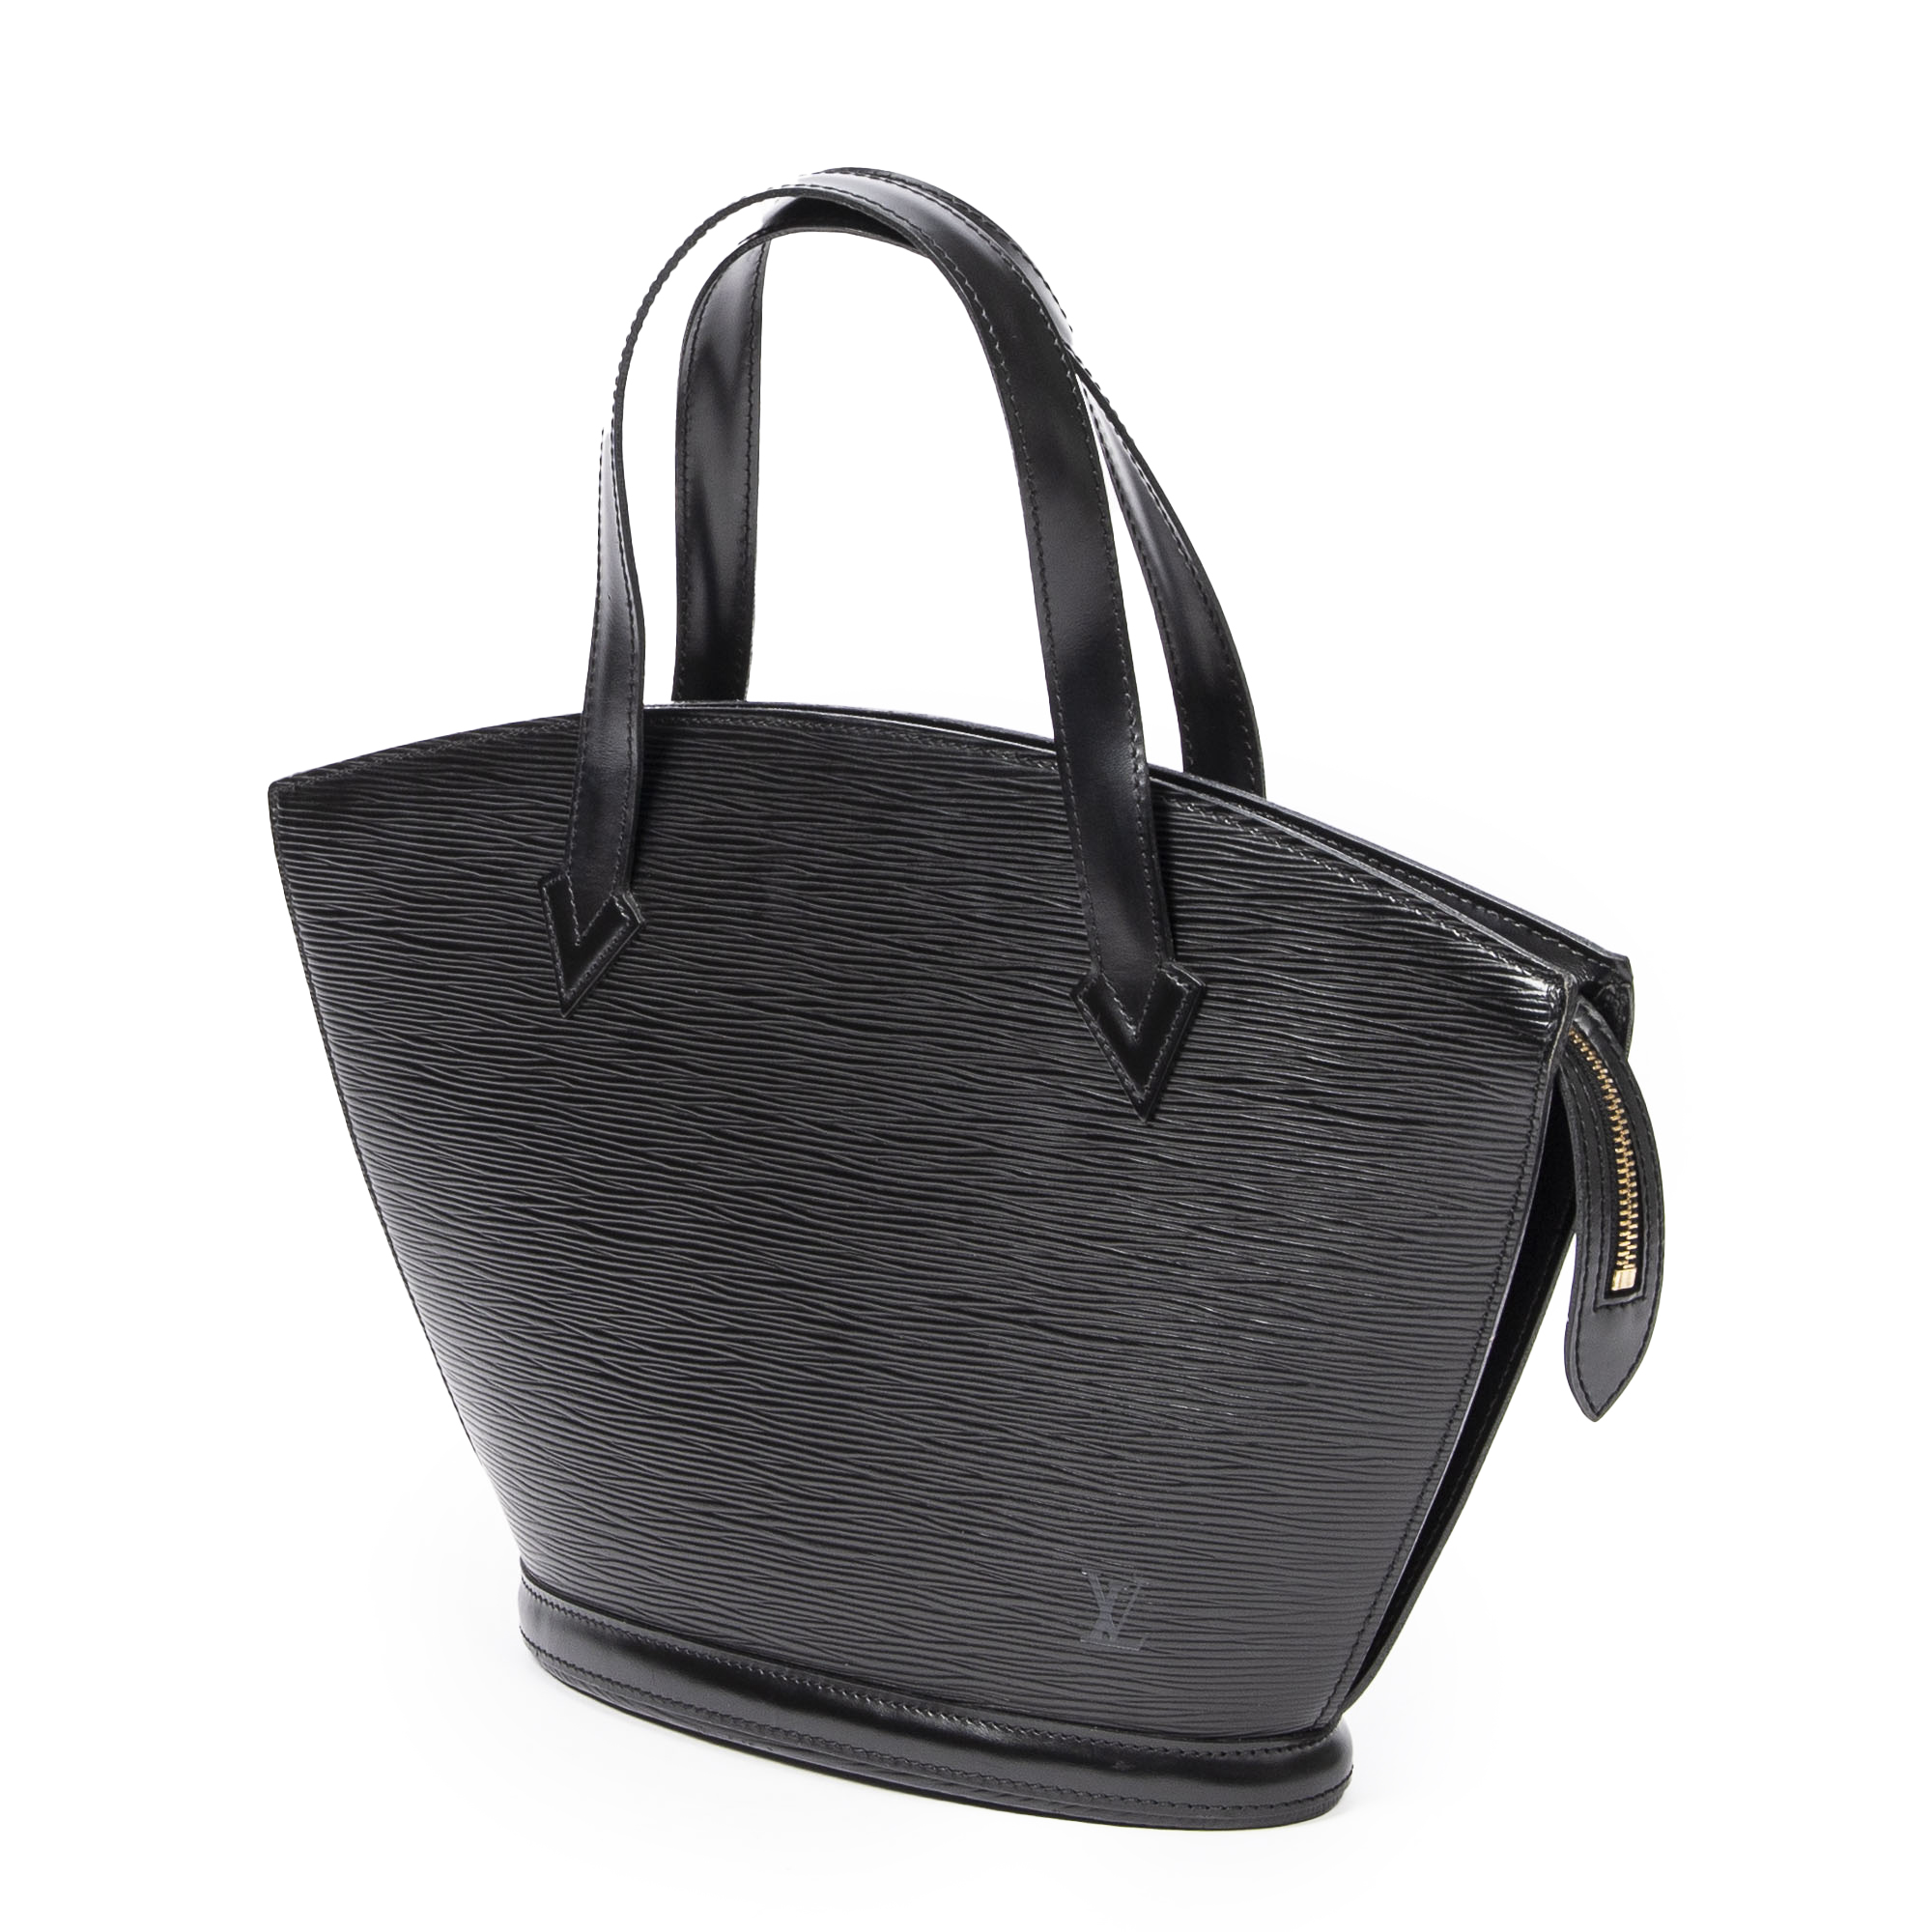 Saint Jacques leather handbag